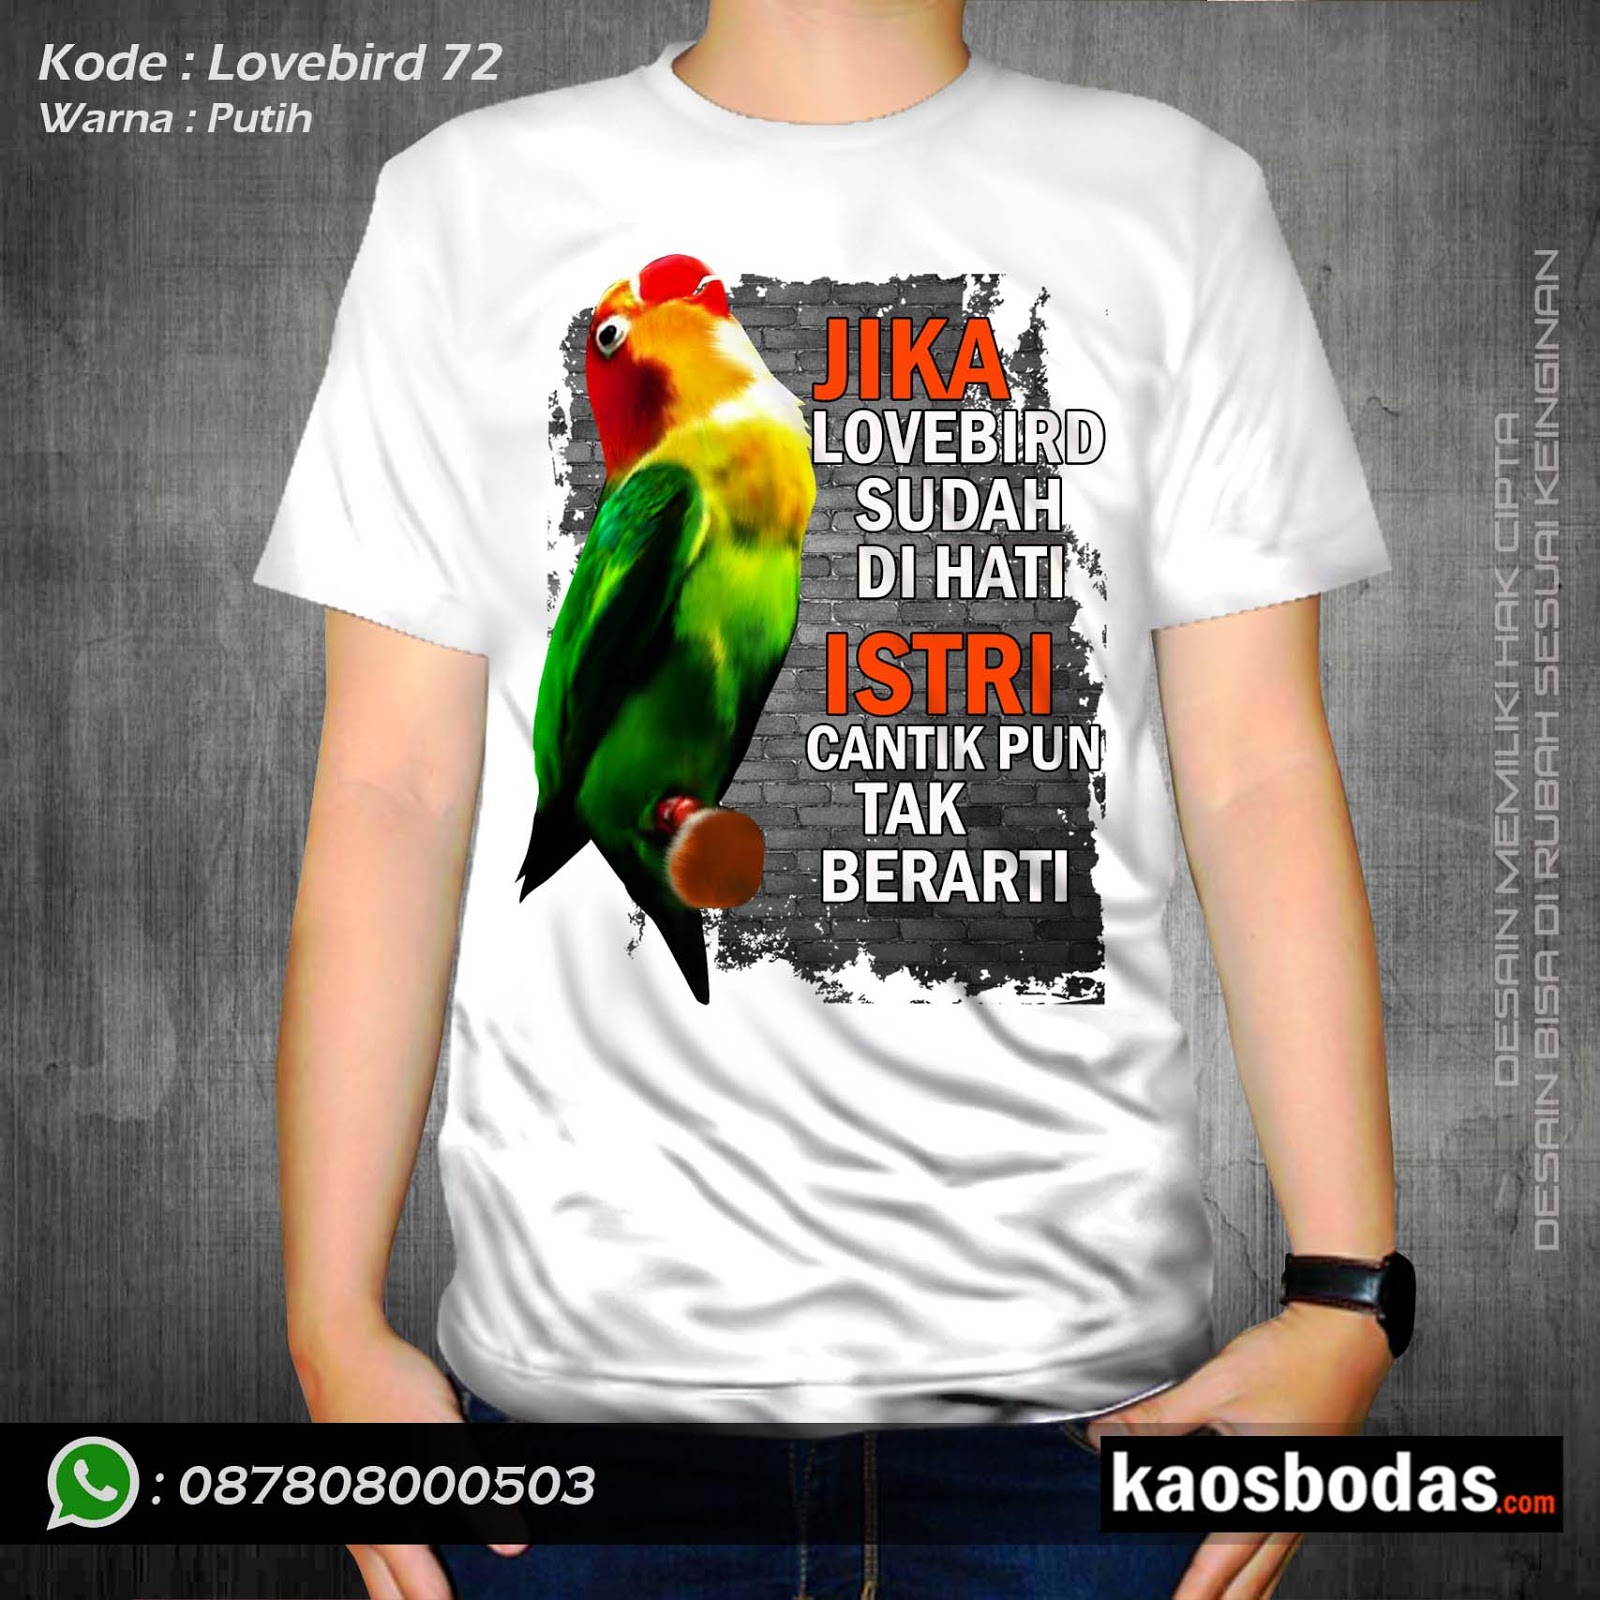 Lovebird 72 Wa 087808000503 Supplier Kaos Kicau Kualitas Premium